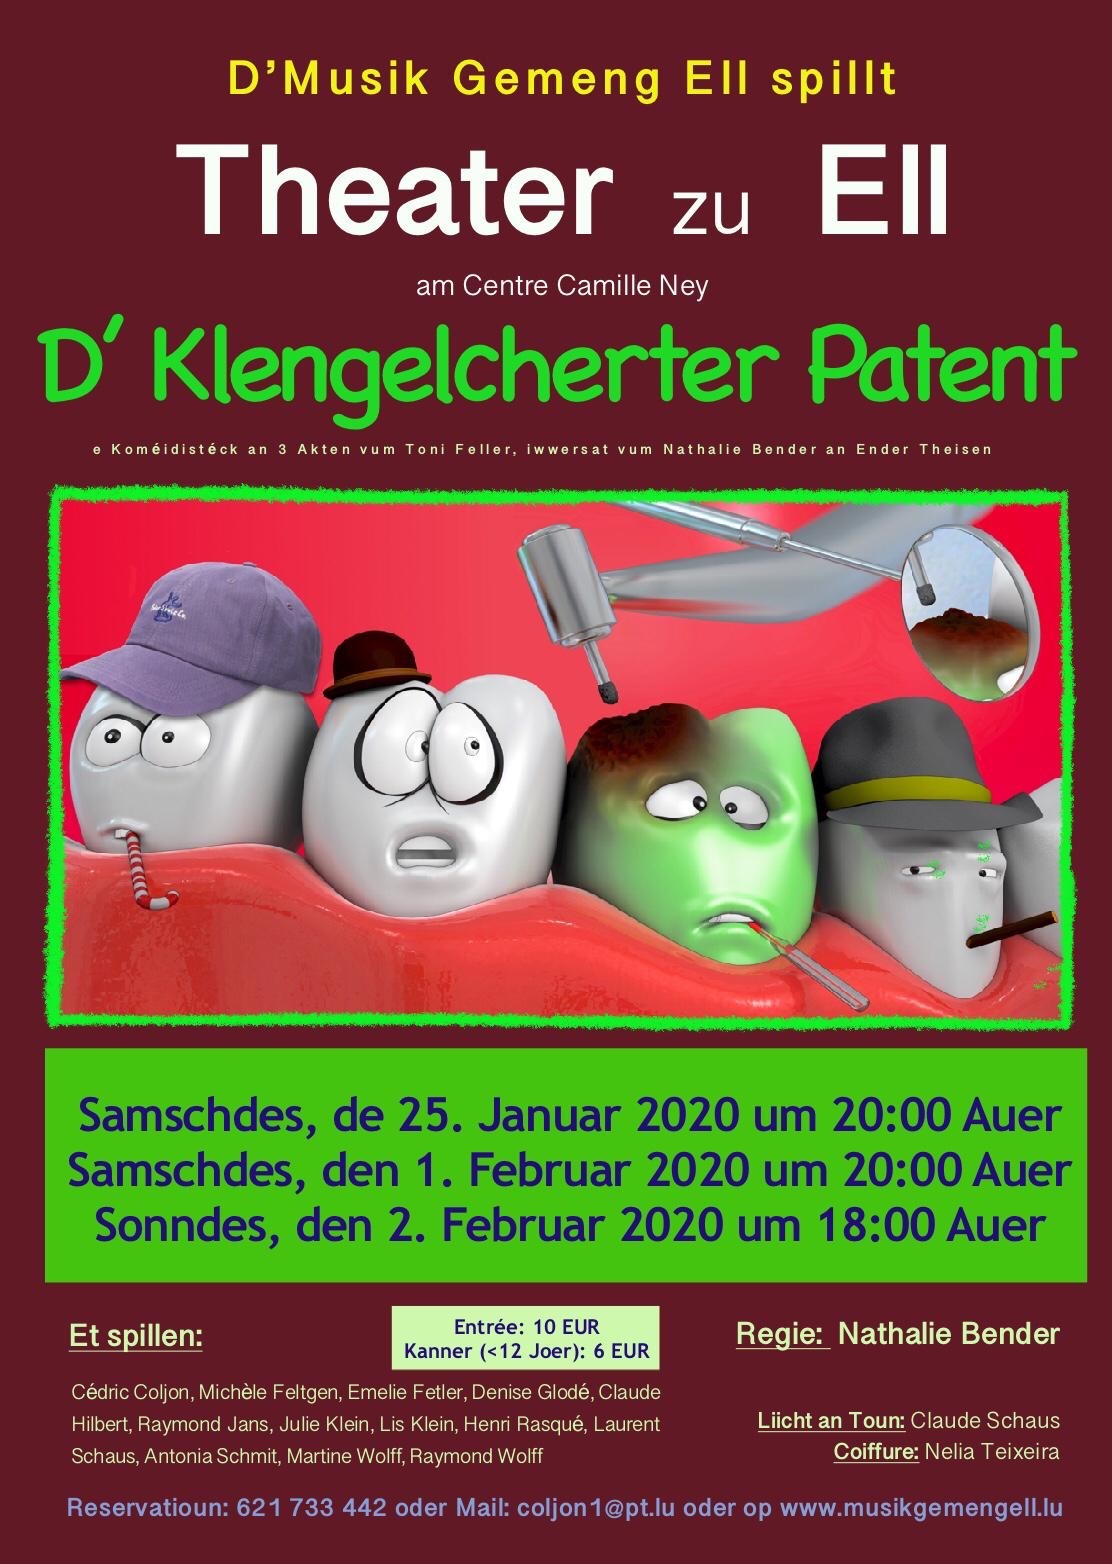 Theater Musik Gemeng Ell - D' Klengelcherter Patent